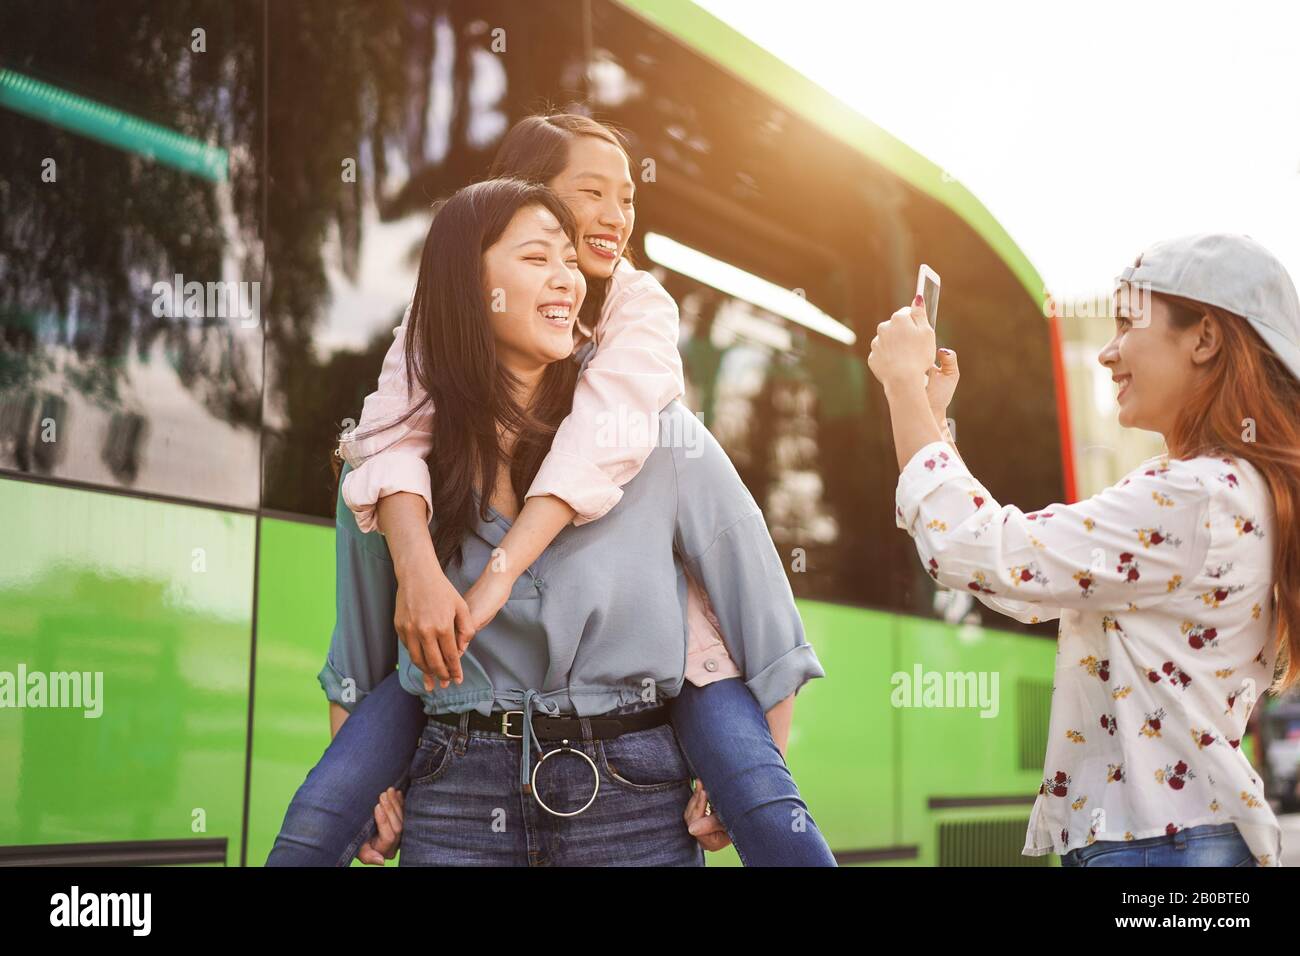 Fröhliche asiatische Studenten, die am Busbahnhof mit Smartphones Videos machen - Junge Leute haben Spaß an Technologietrends - Freundschaft, Universität und Trans Stockfoto